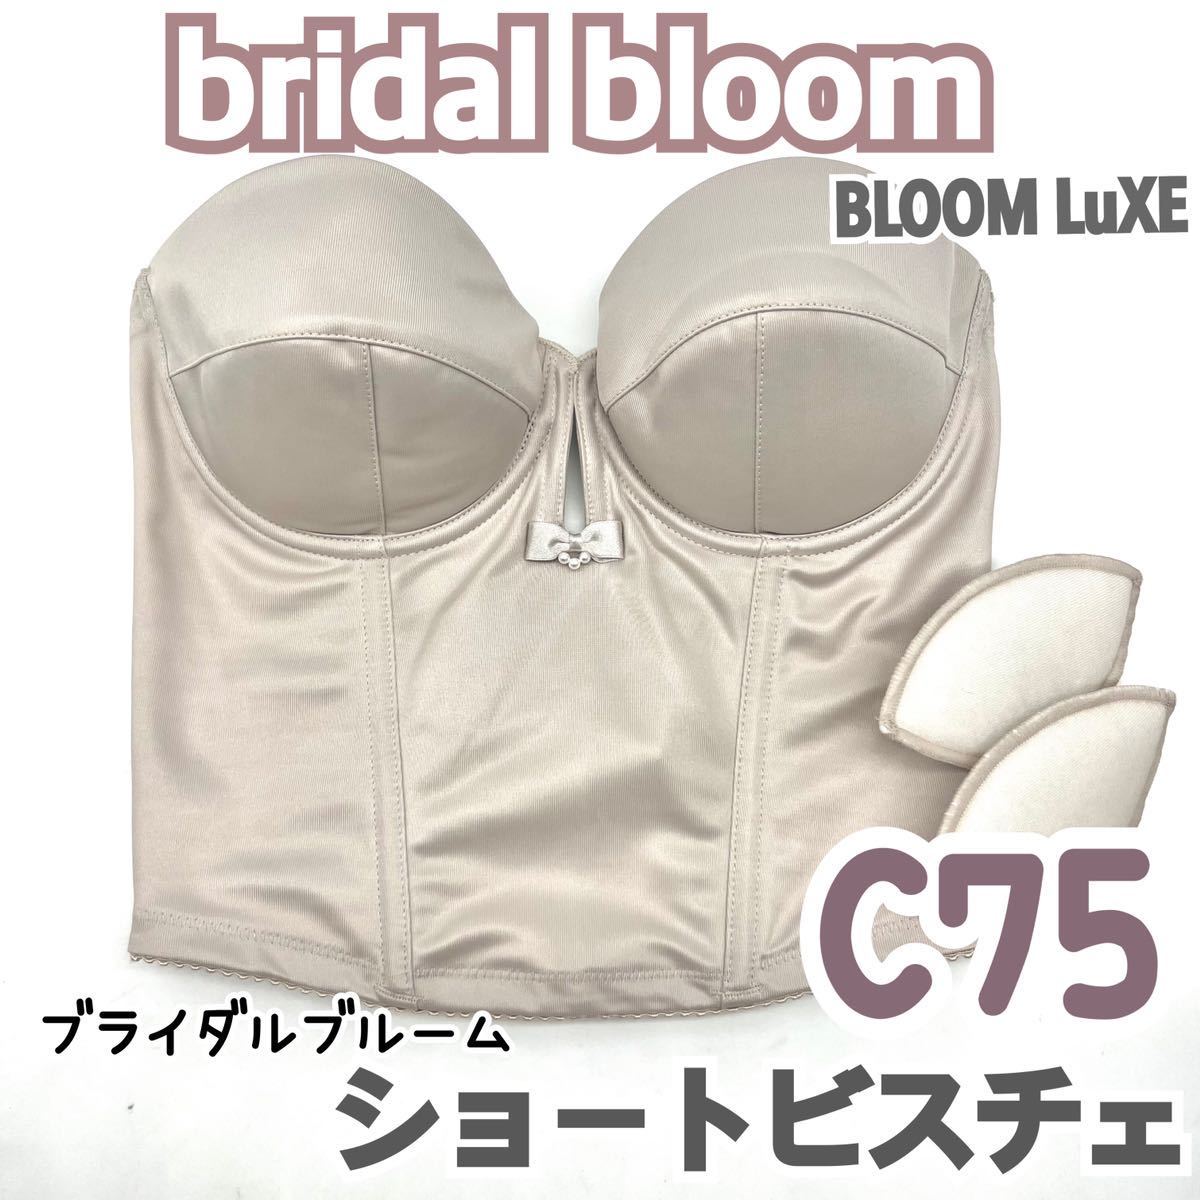 bridal bloom ブライダルブルーム ショートビスチェ ブラ C75 背中 空 バックレス ウェディング ドレス オープン ブライダルインナー